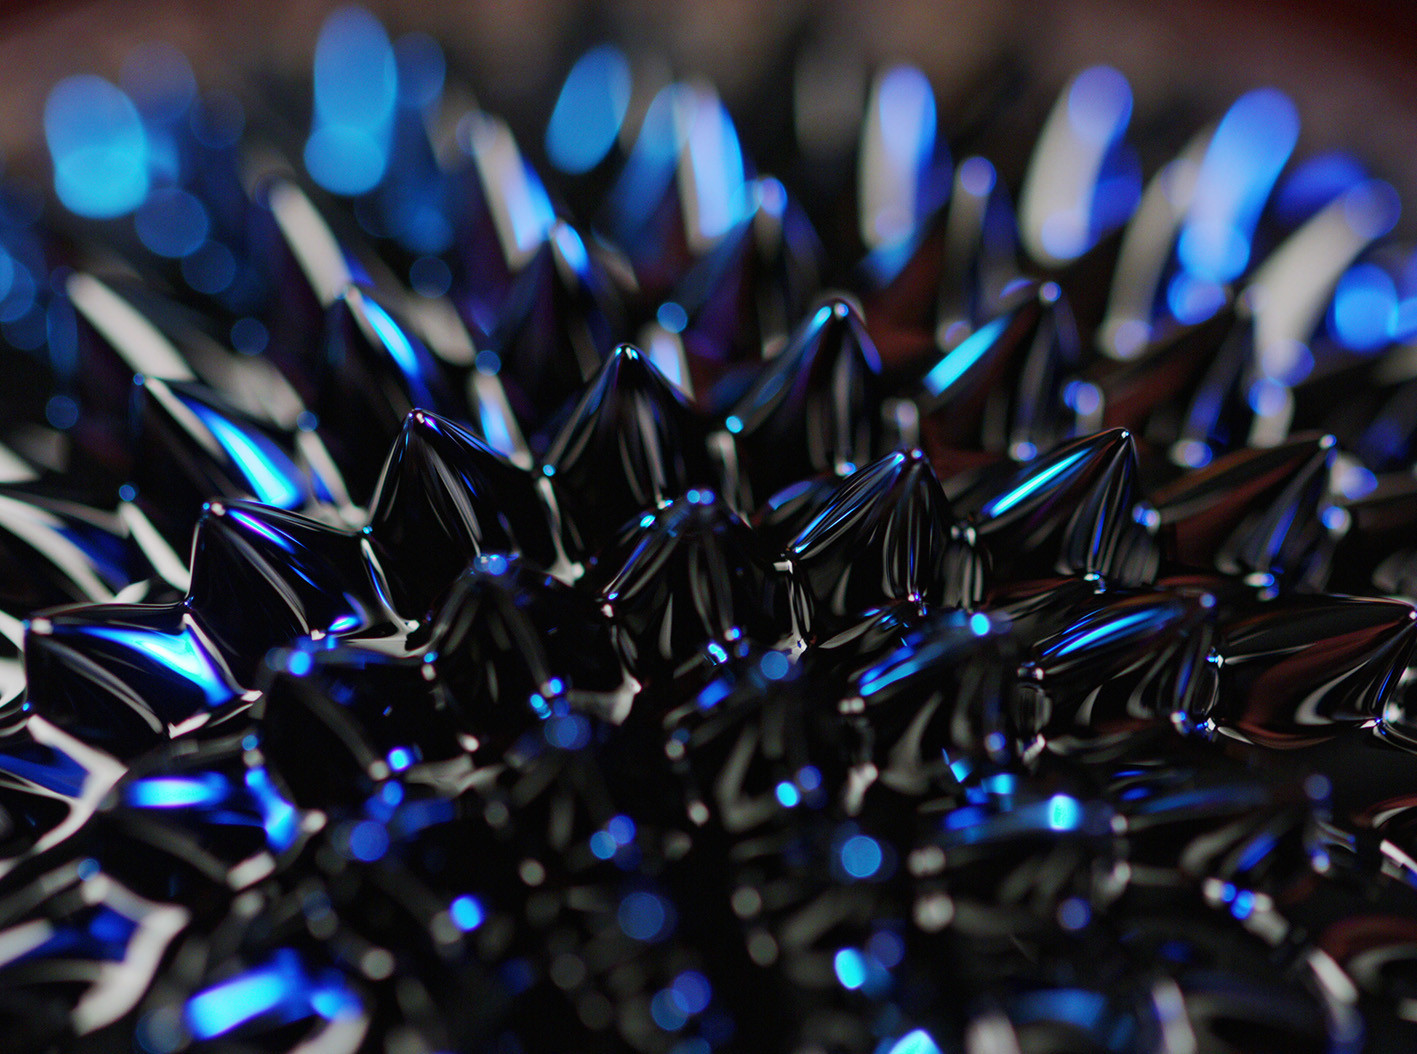 ferrofluido material hipnotico que es